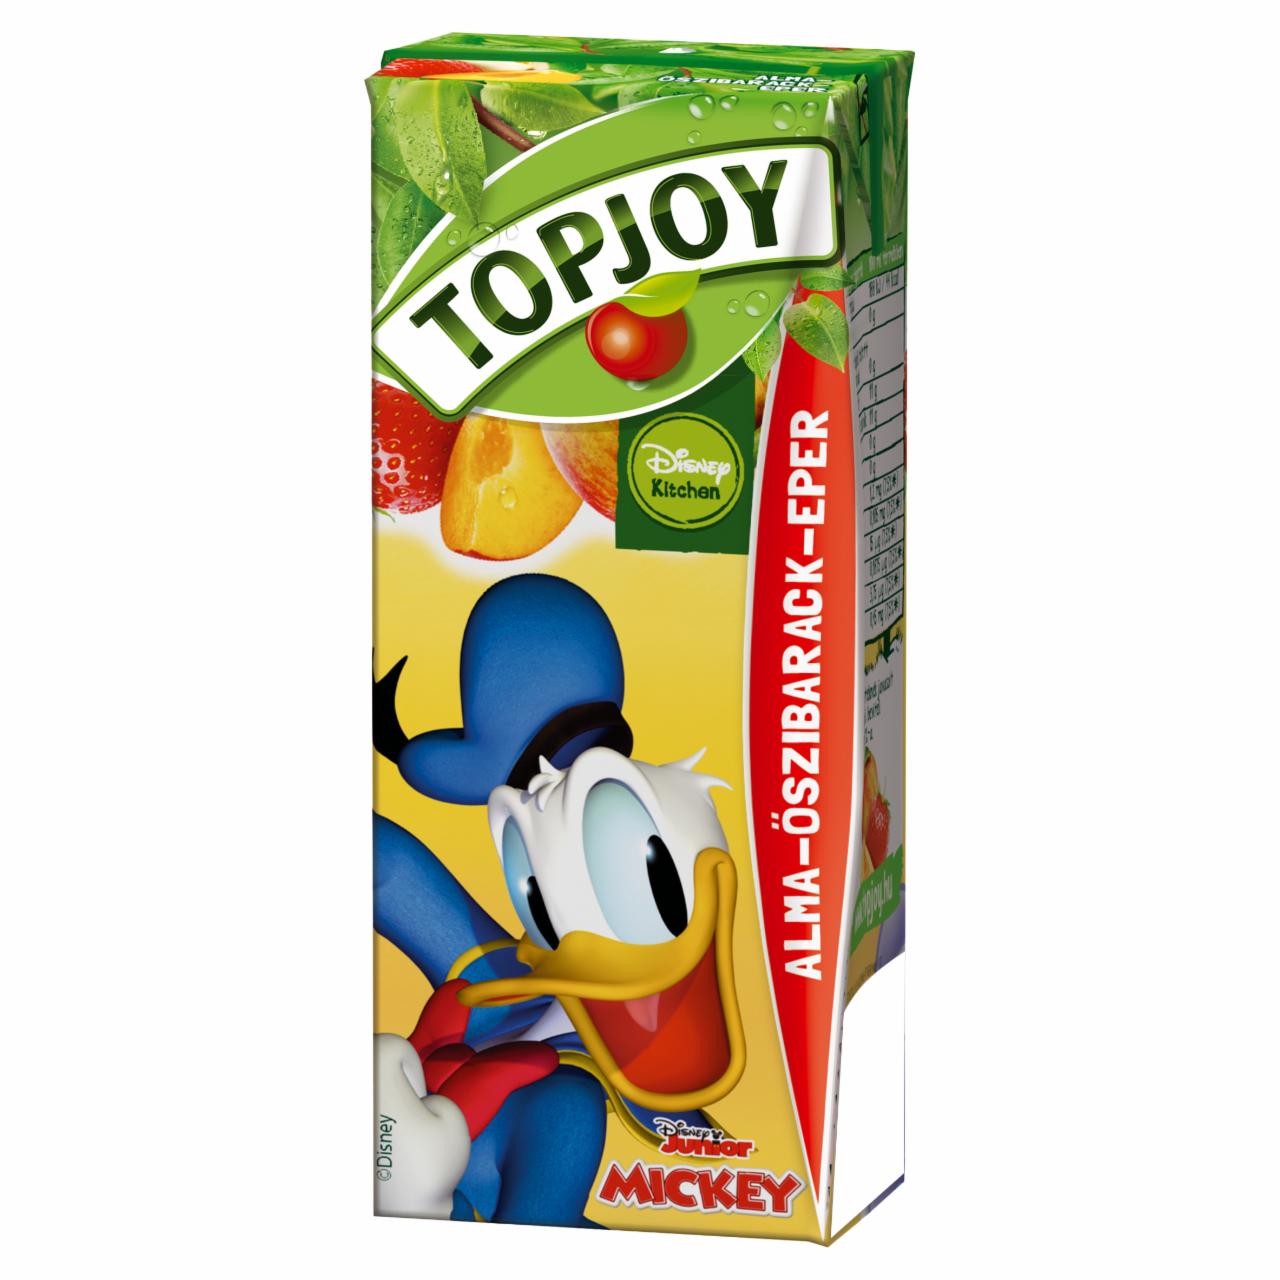 Képek - Topjoy alma-őszibarack-eper ital 200 ml